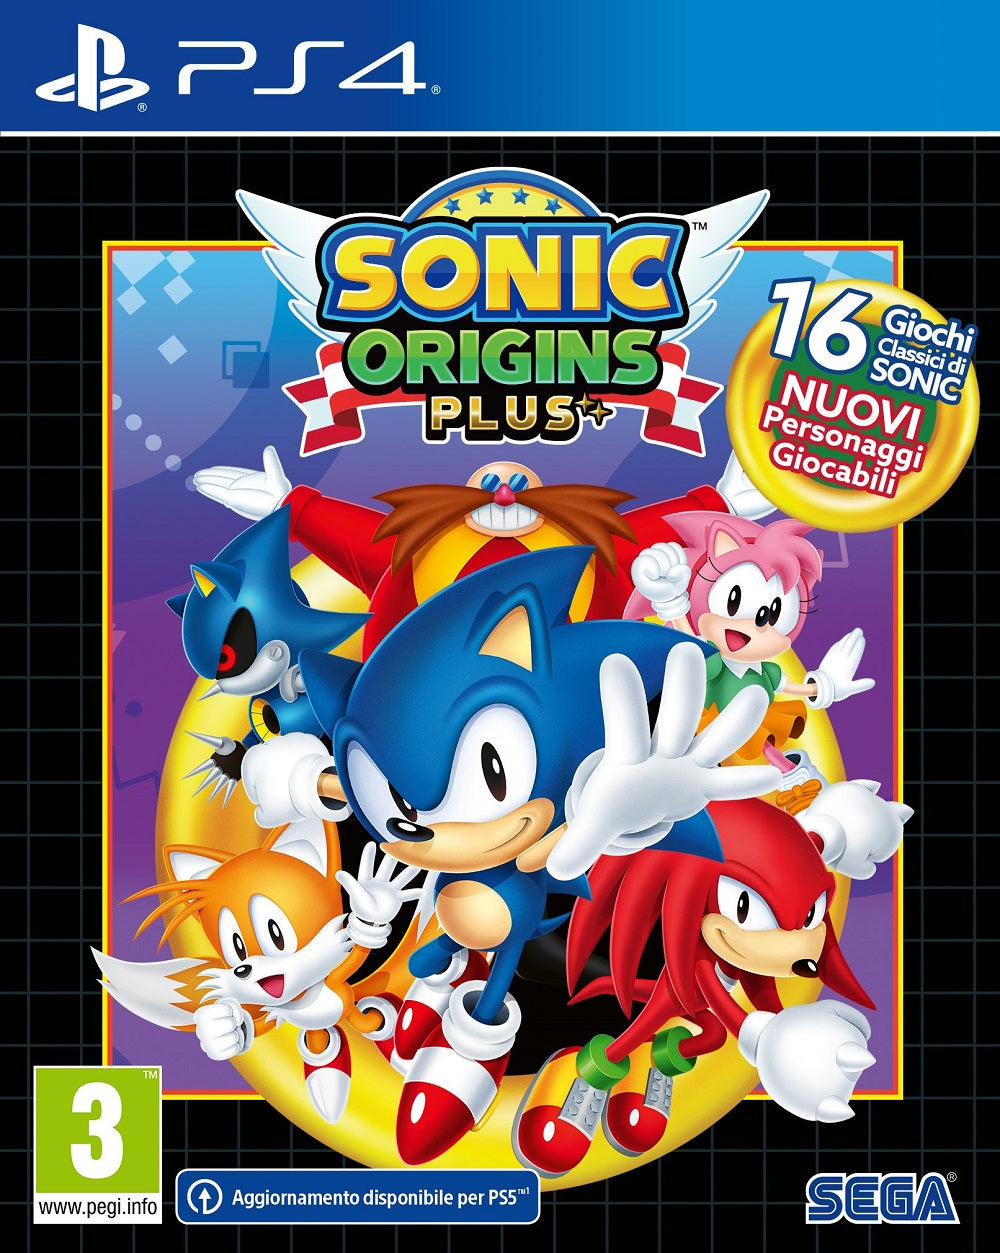 PS4 Sonic Origins Plus Day One Edition EU - Disponibilità immediata Plaion